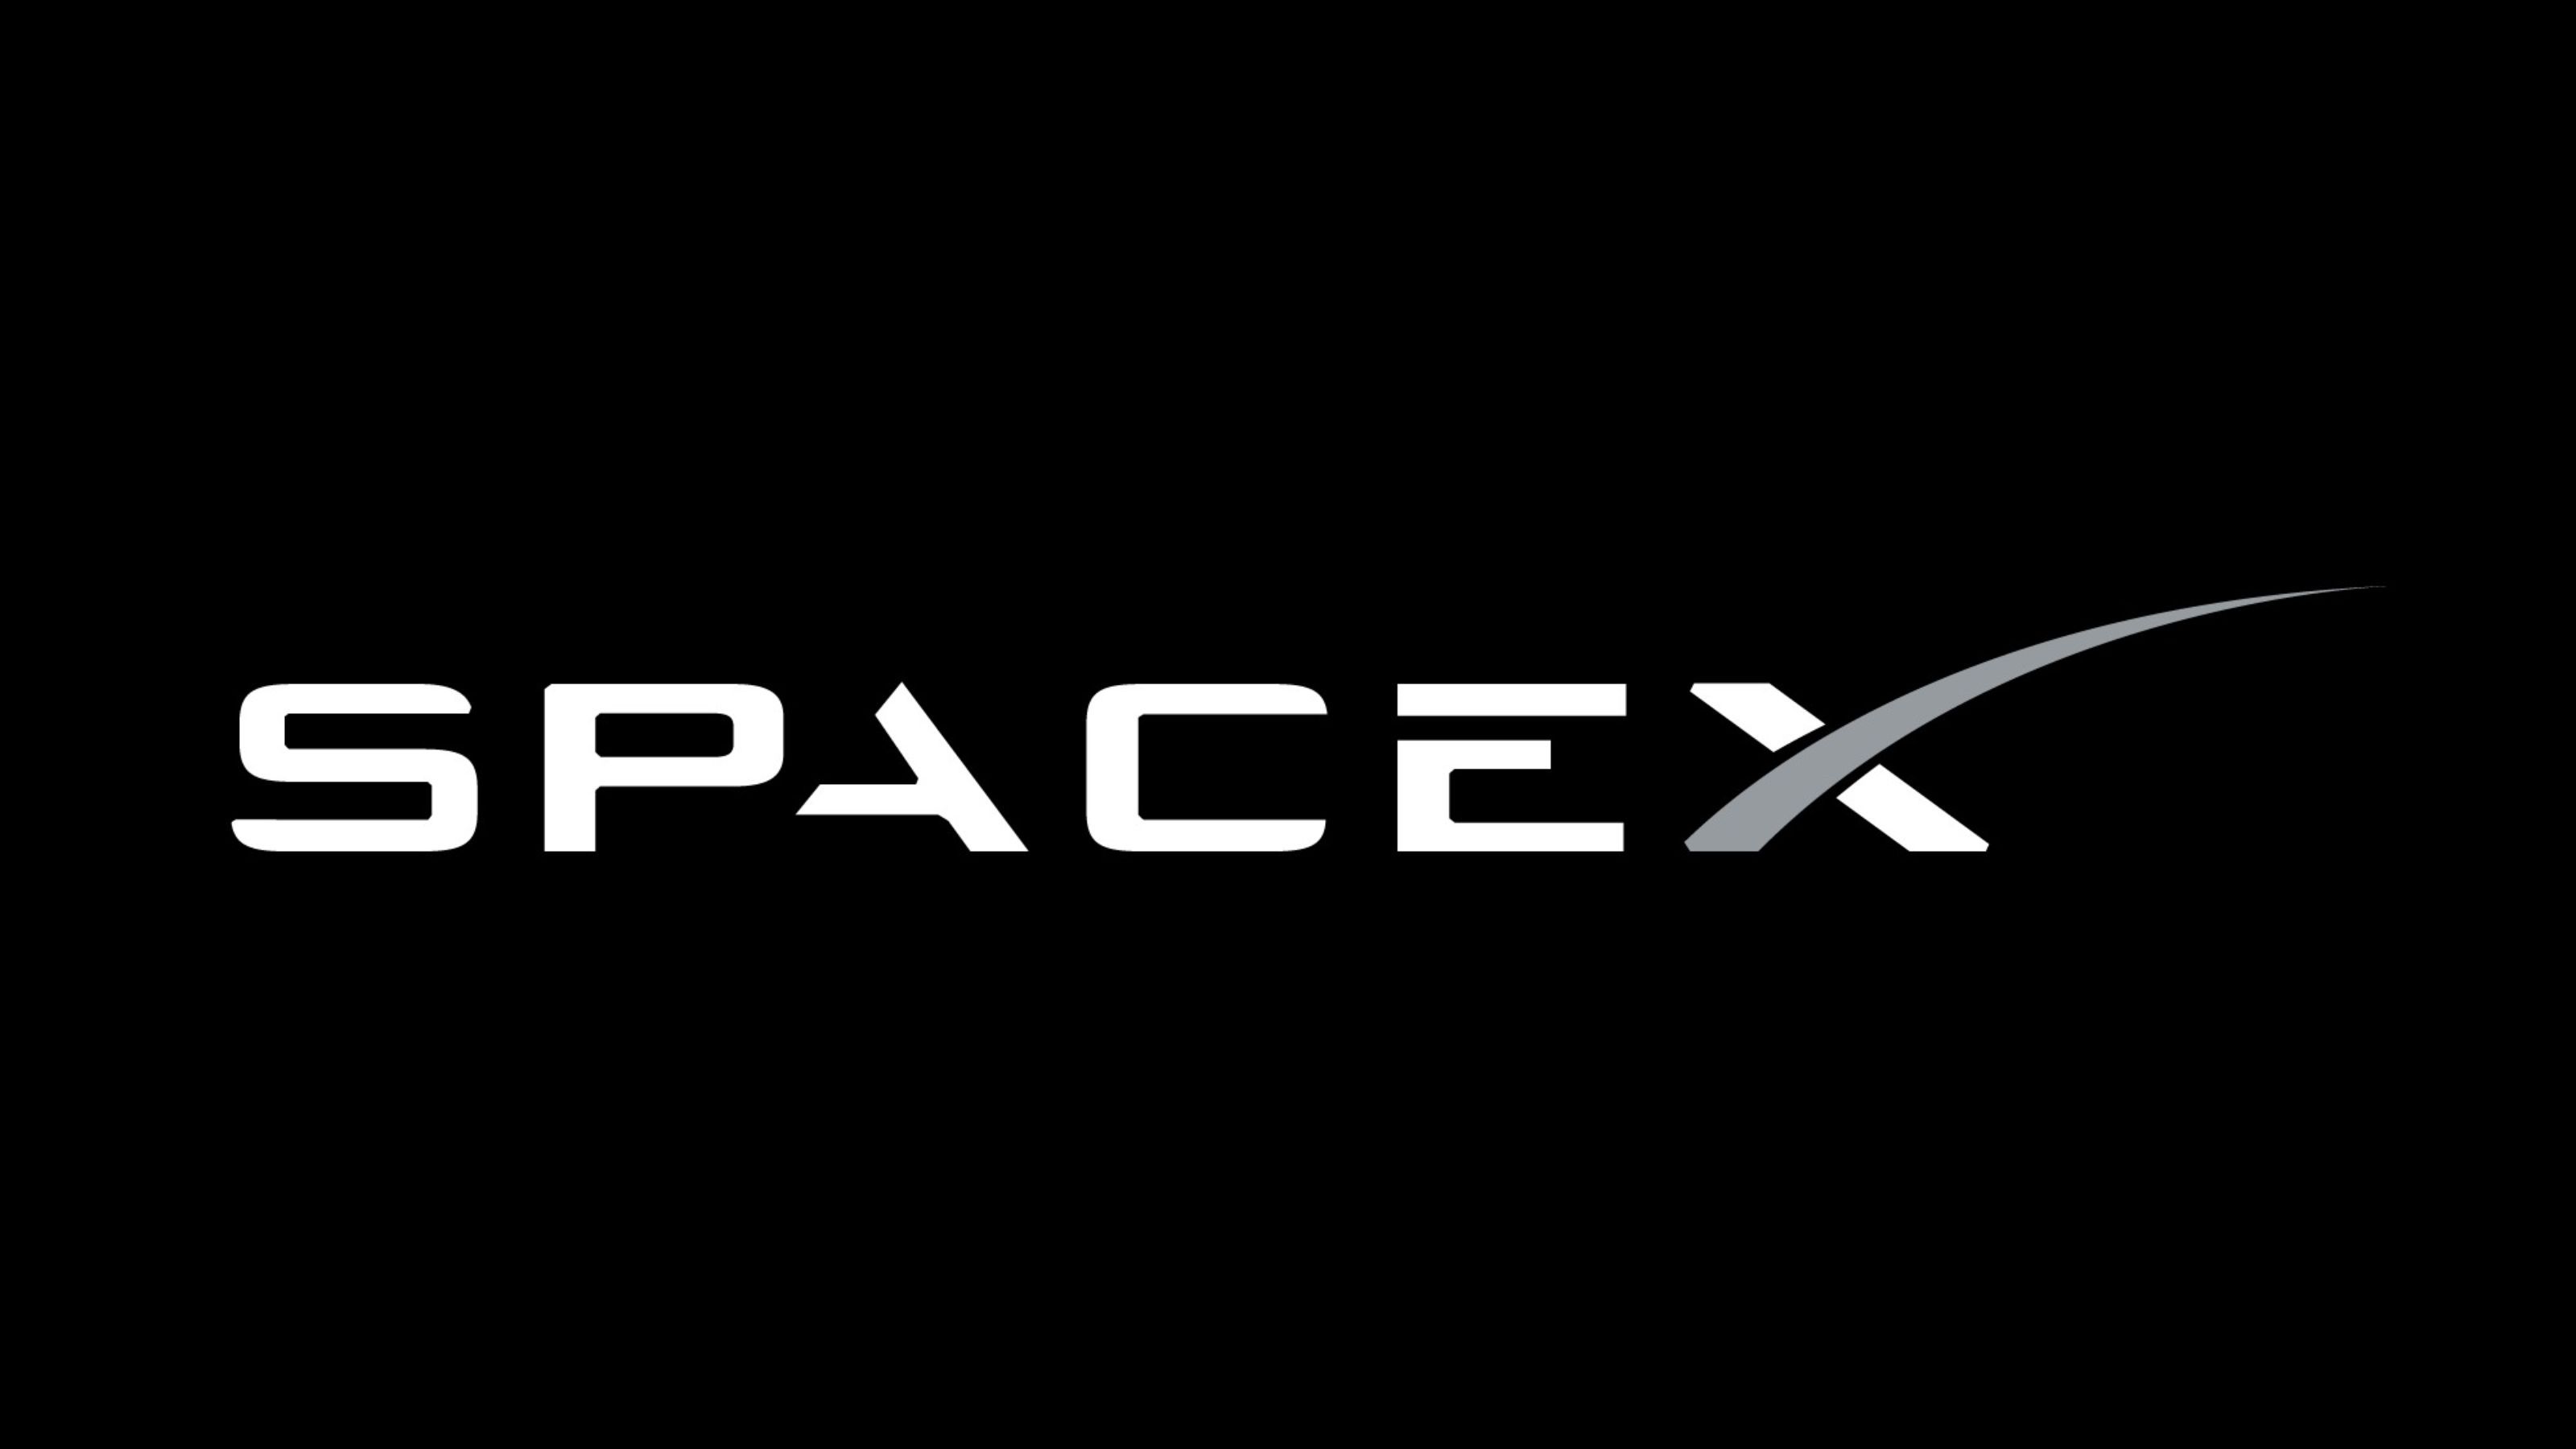 SpaceX Logo Wallpaper 59810 3200x1800px